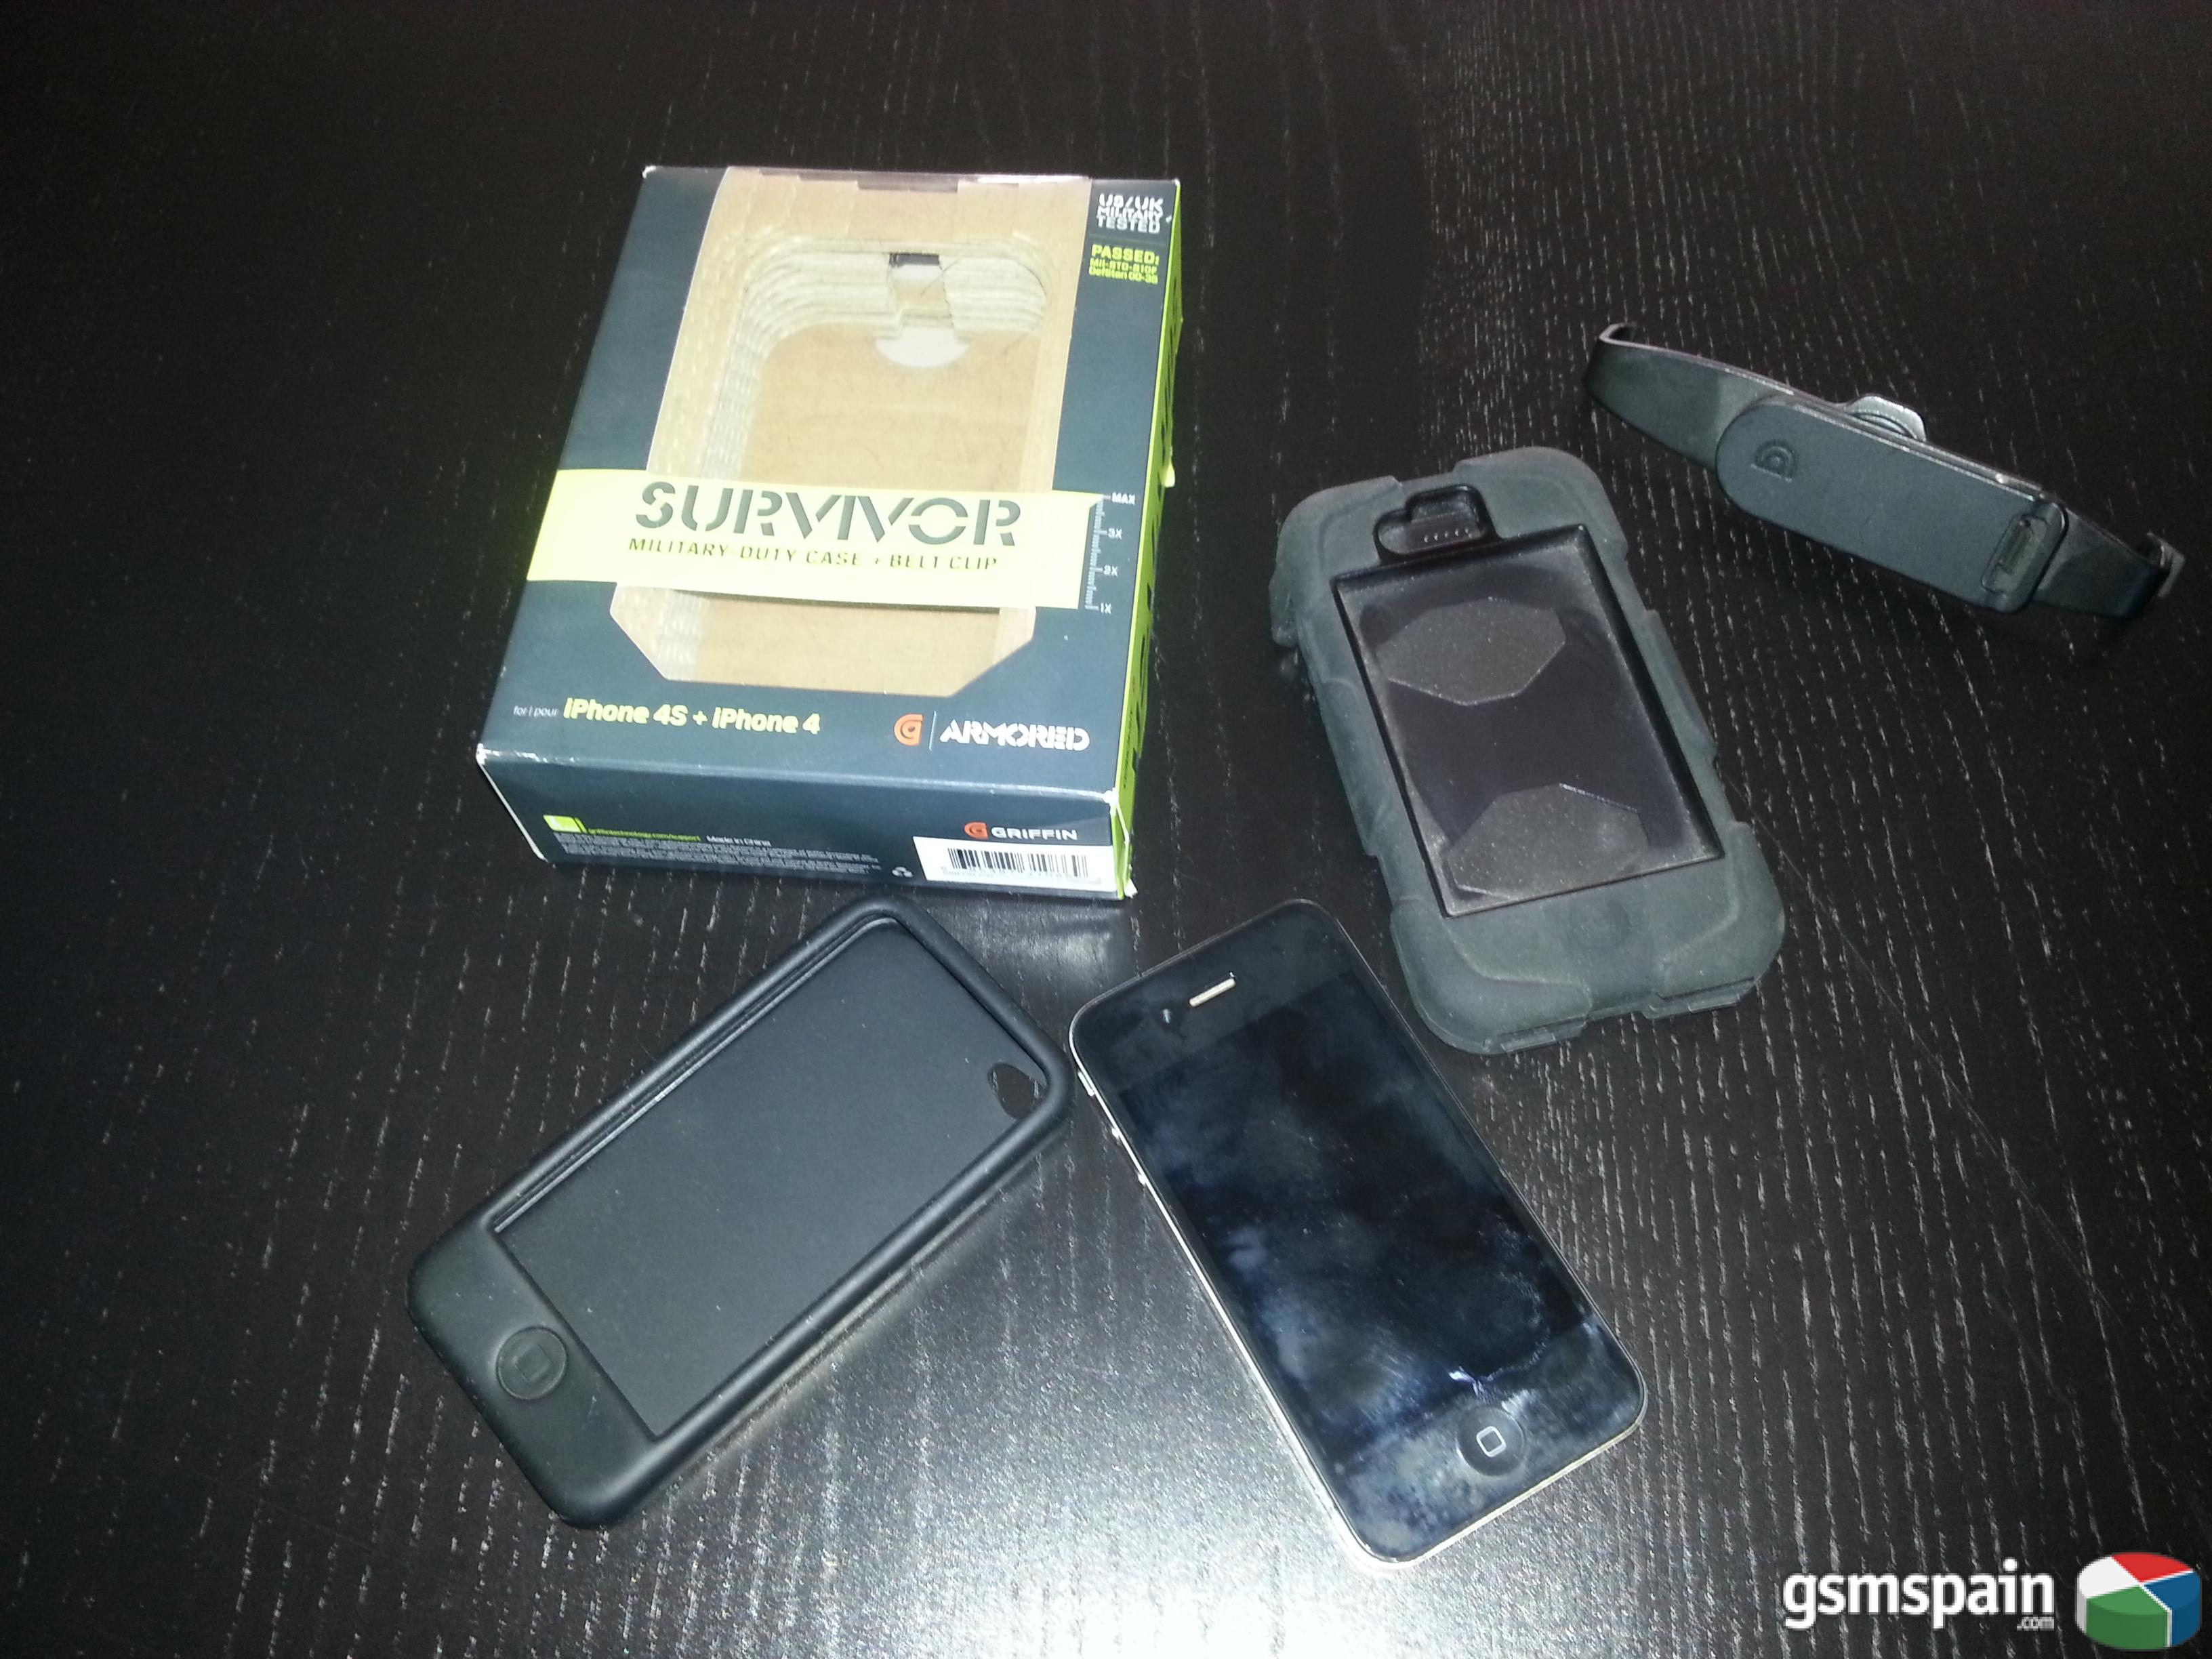 [VENDO] [VENDO] Iphone 4 con defecto GSM + funda ARMORED Survivor 4/4S.